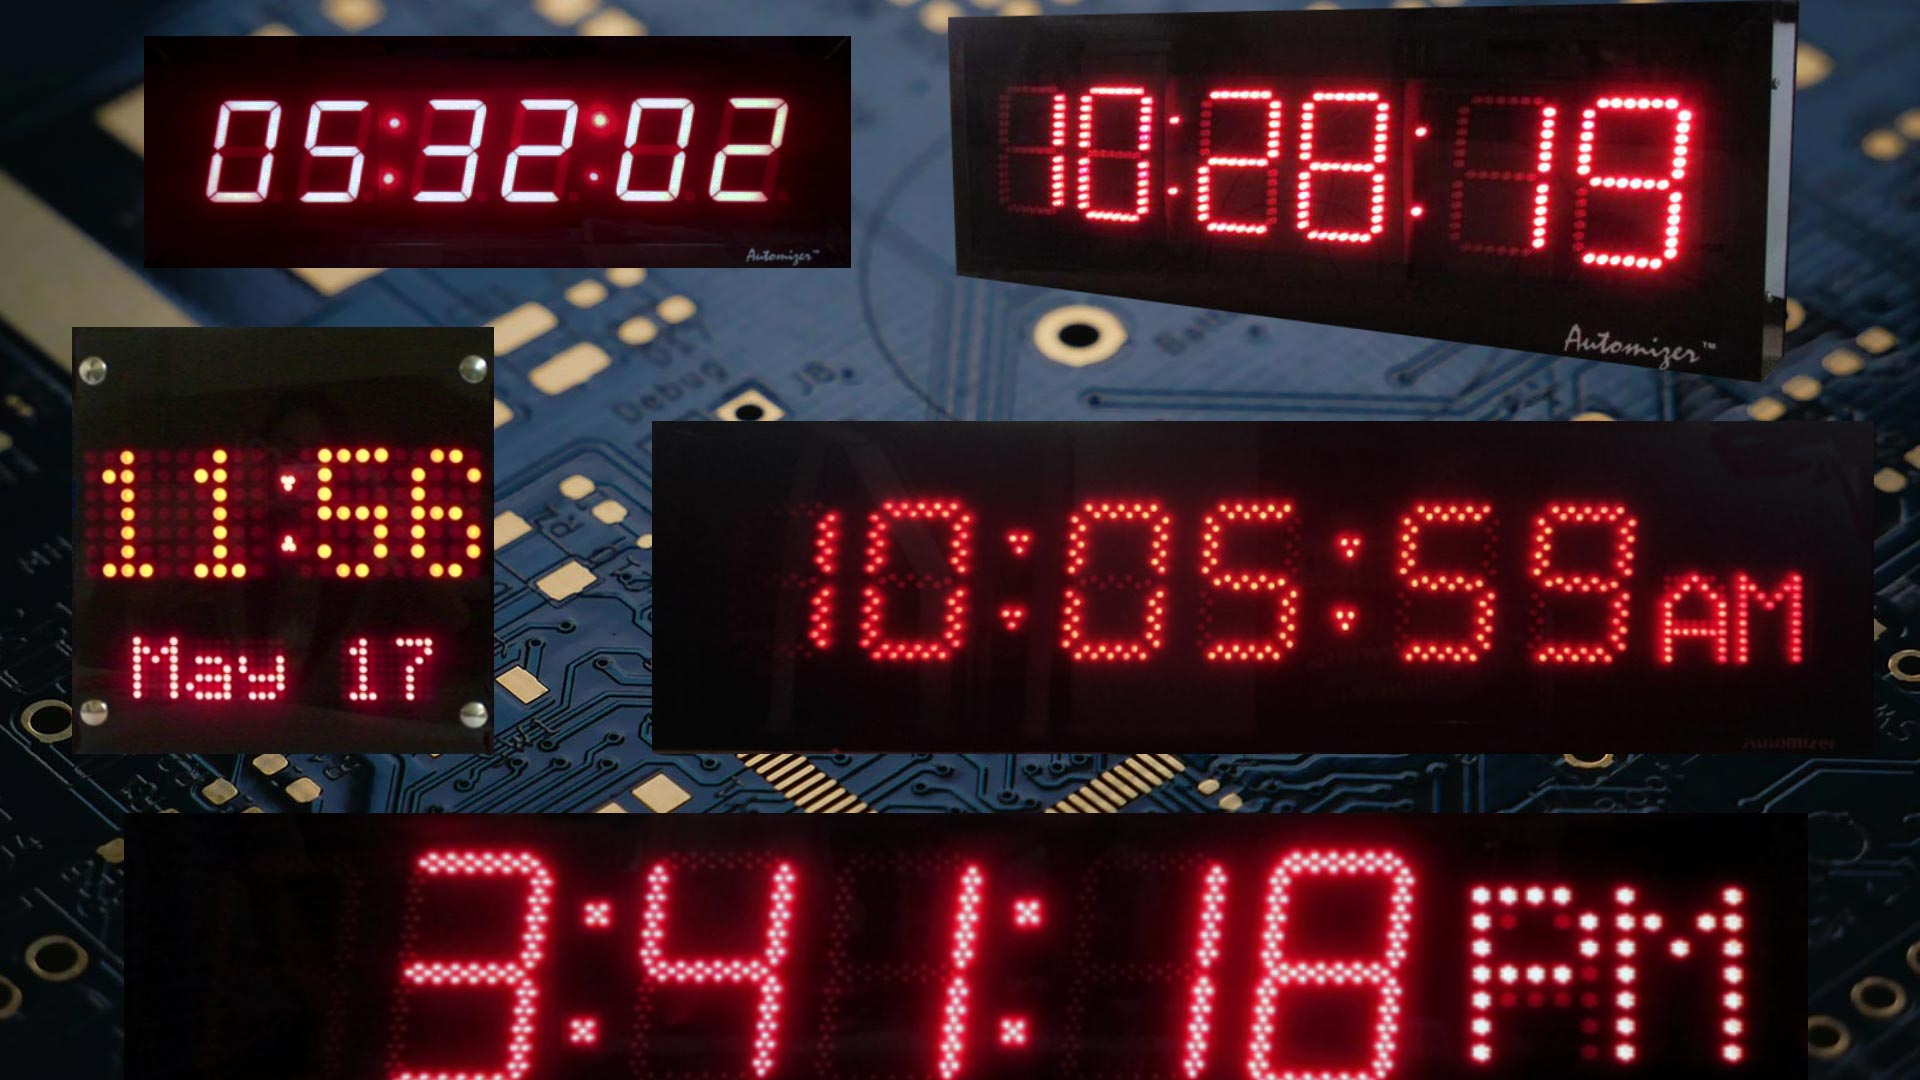 Automizer Digital Clocks